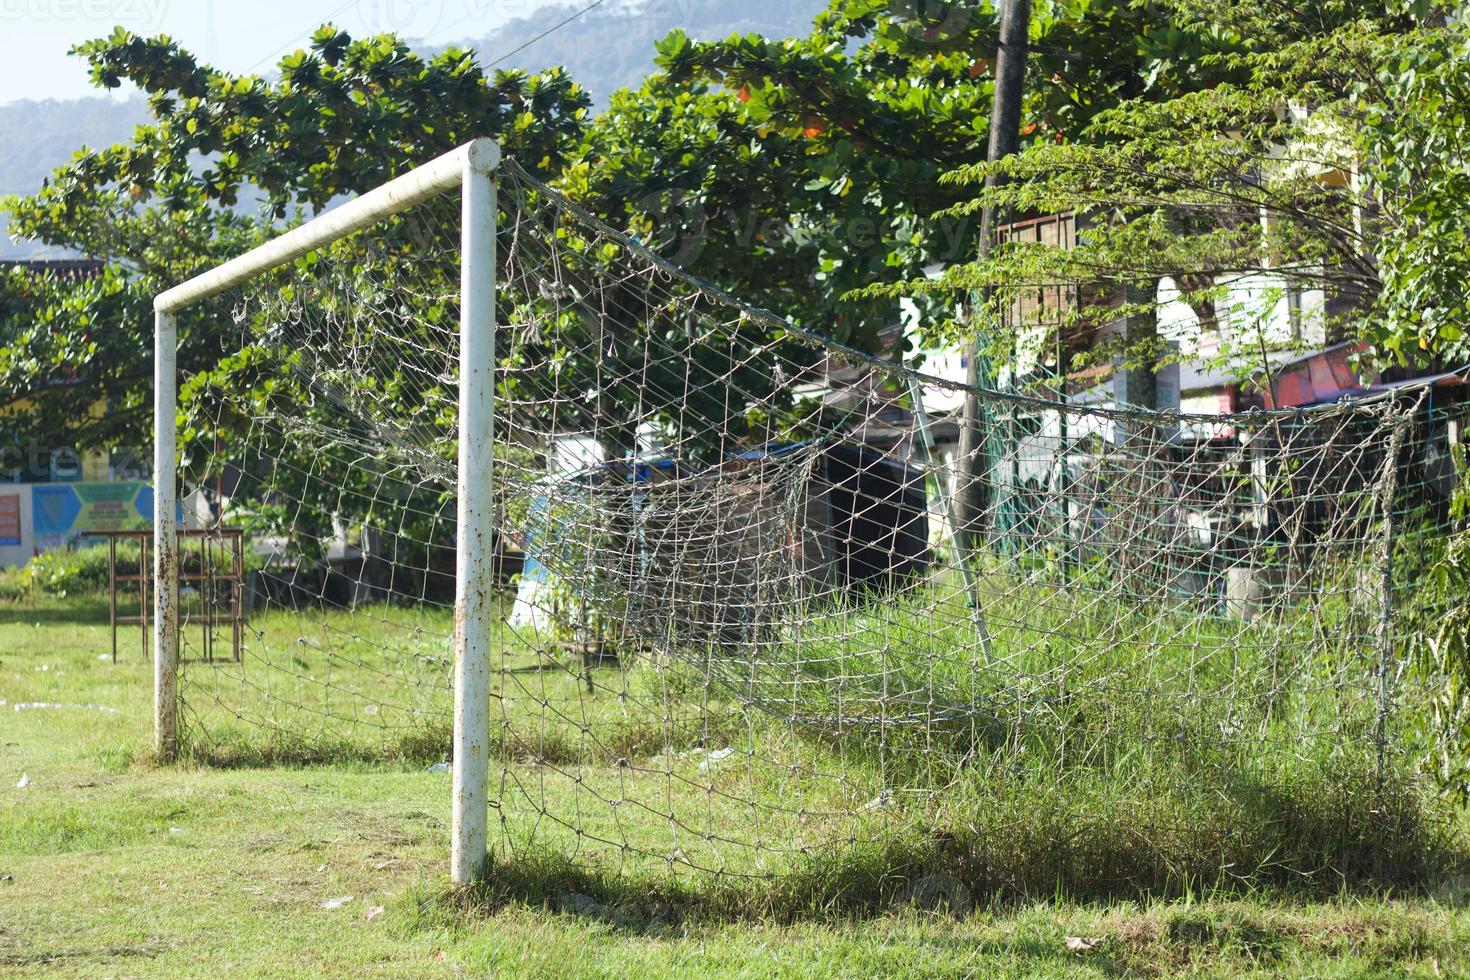 voetbal of voetbaldoelnet op oud grasveld. foto